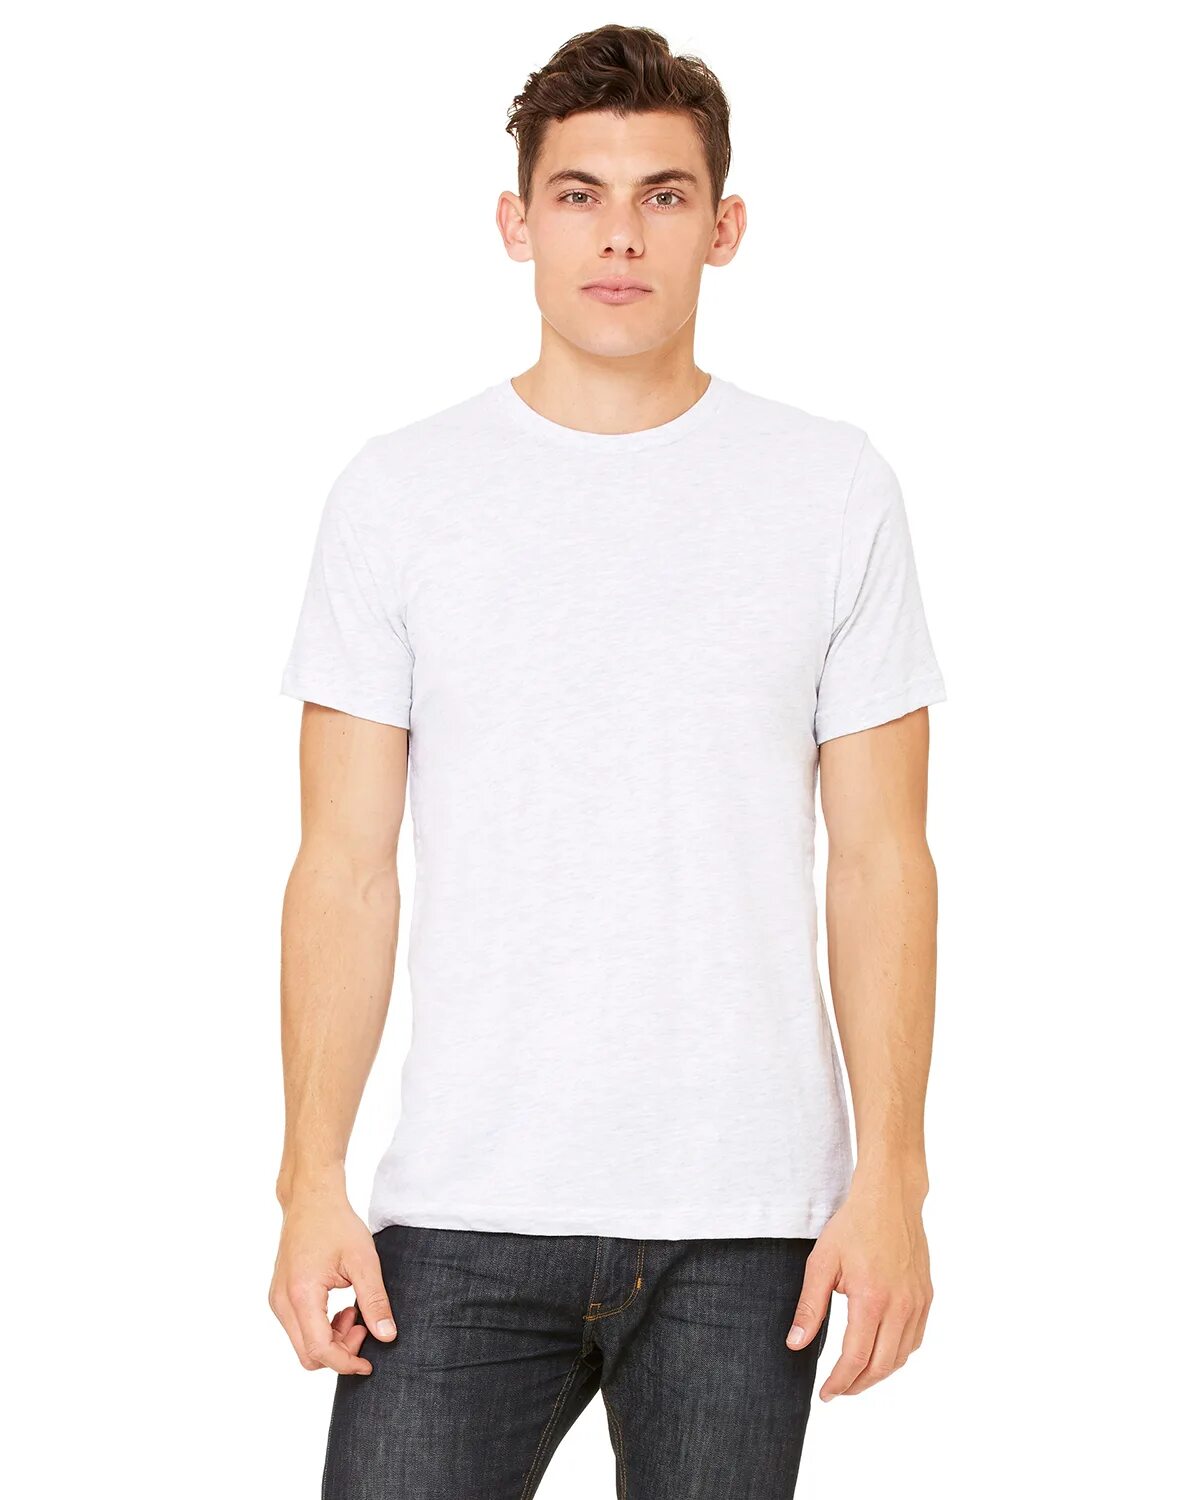 Canvas Bella Canvas футболки. Белая футболка. Человек в белой футболке. Подросток в белой футболке. Куплю футболку подростку